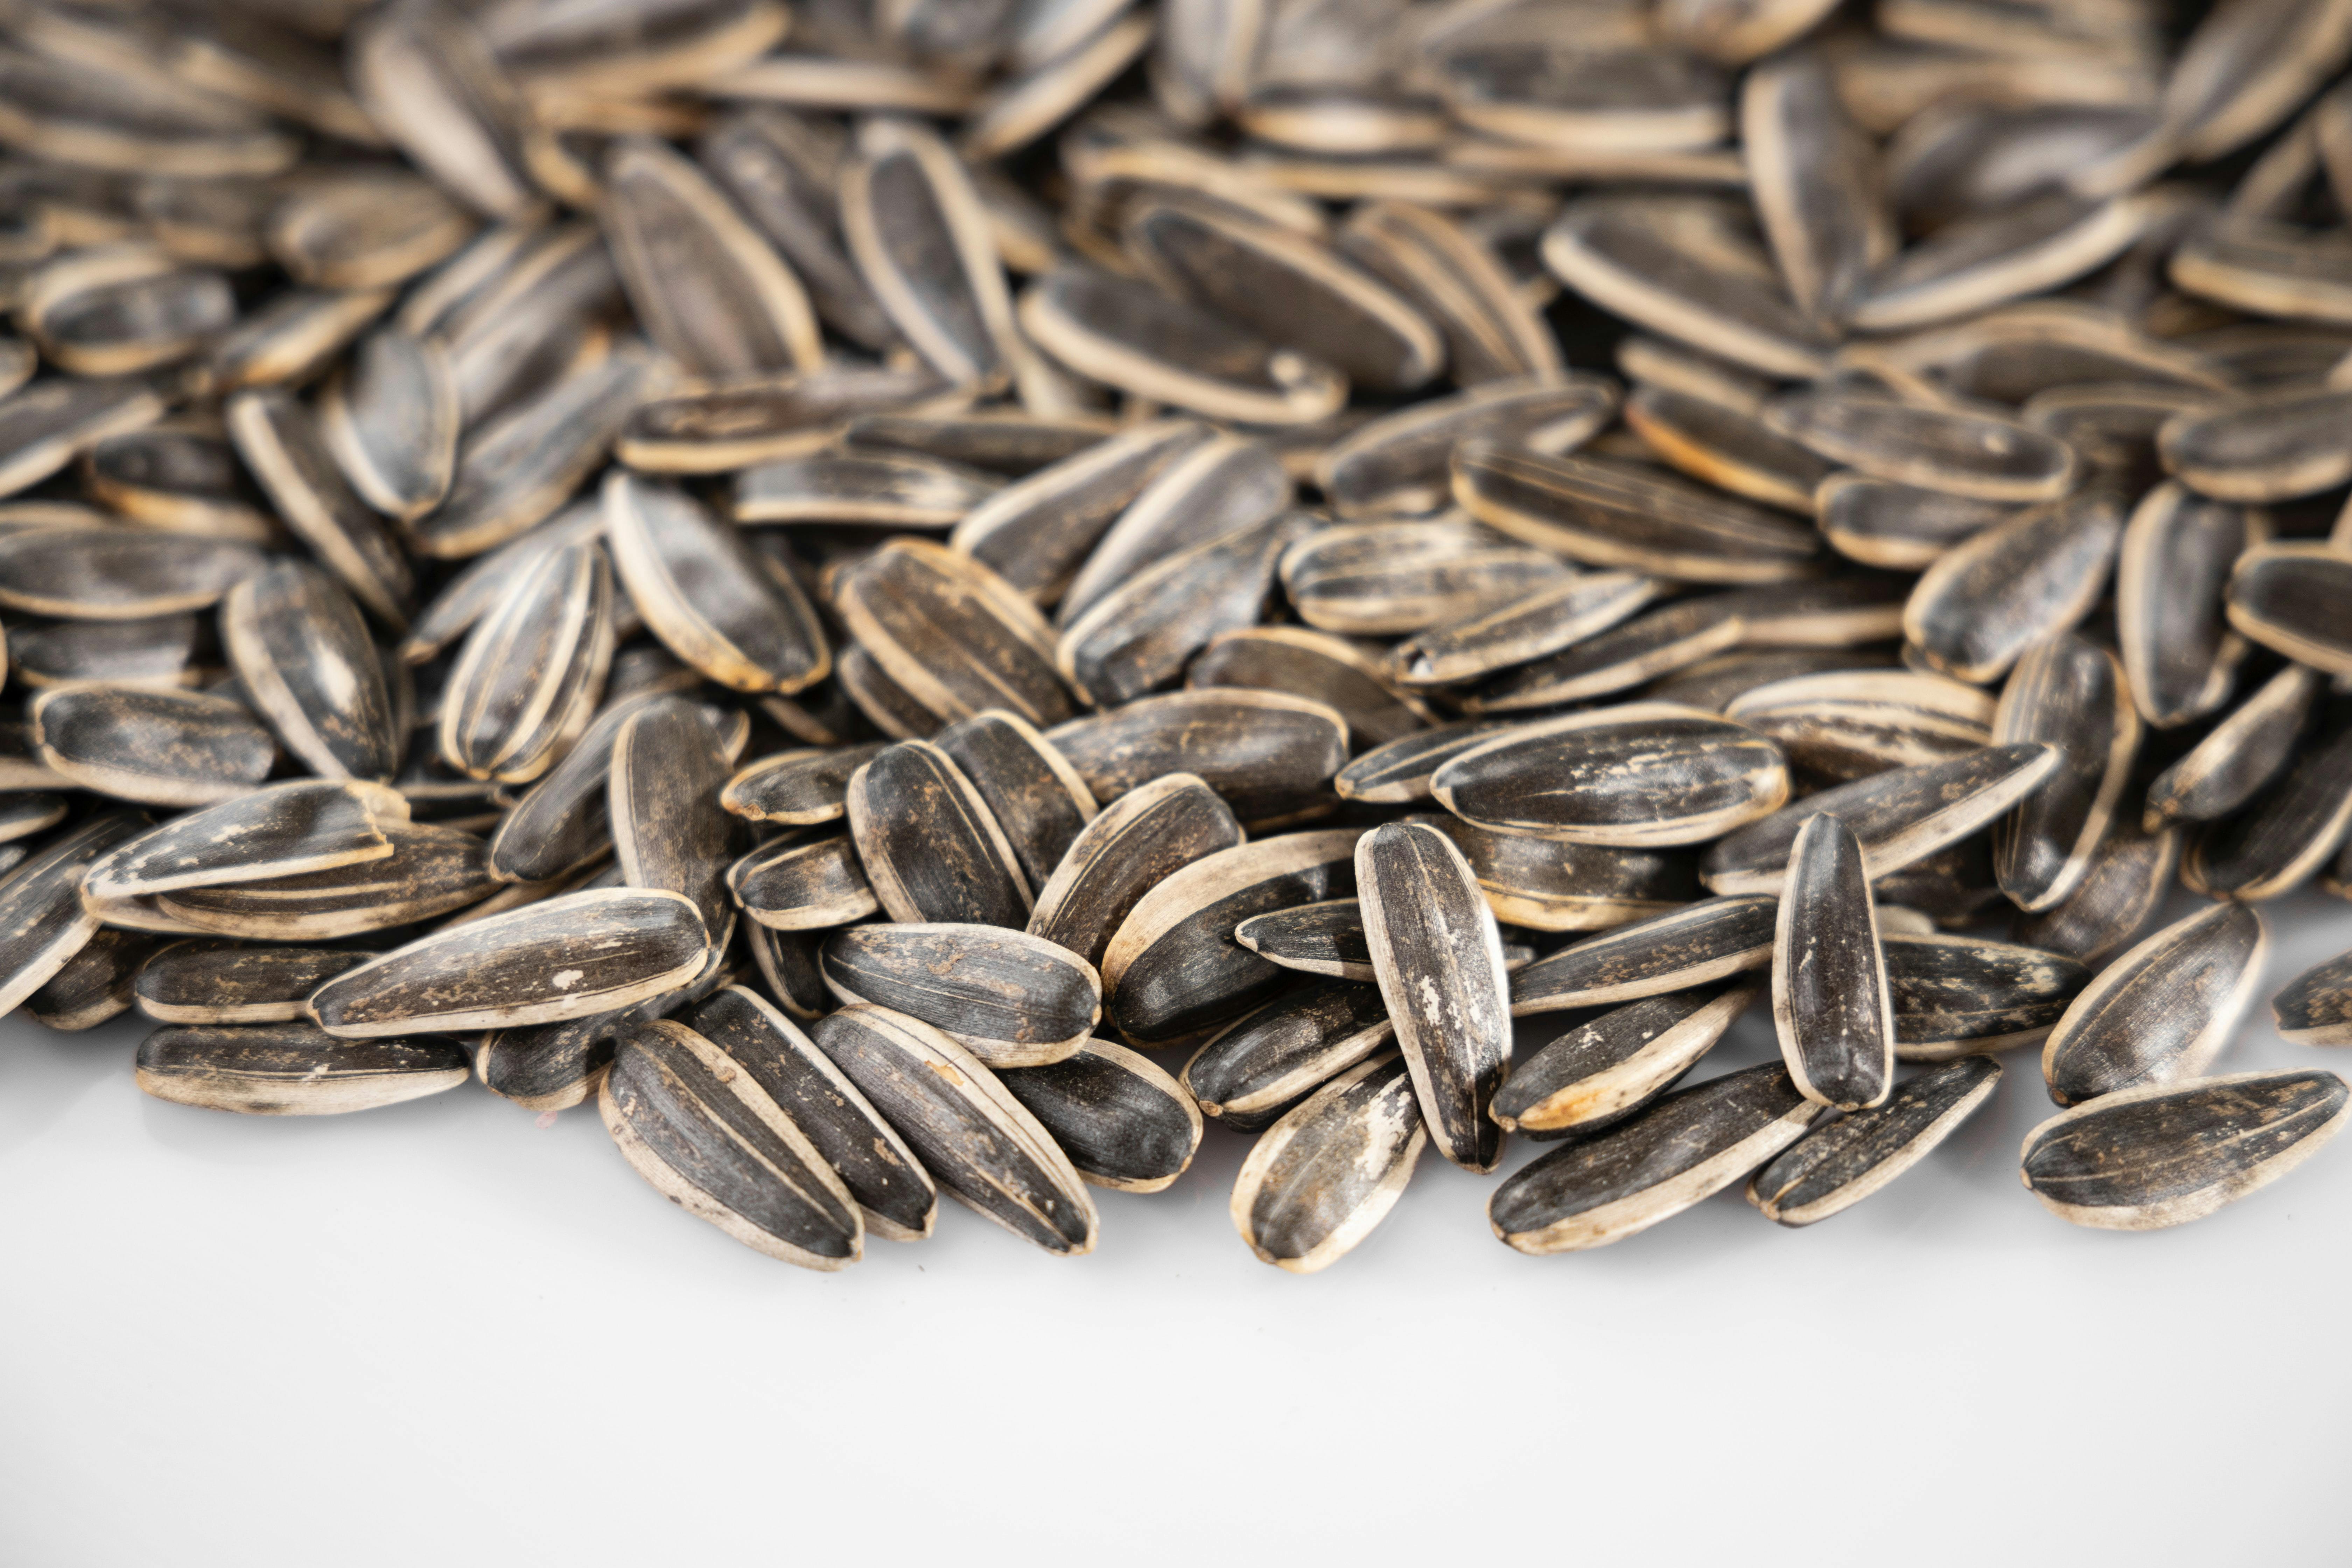 Les graines de tournesol font-elles maigrir? - Le blog